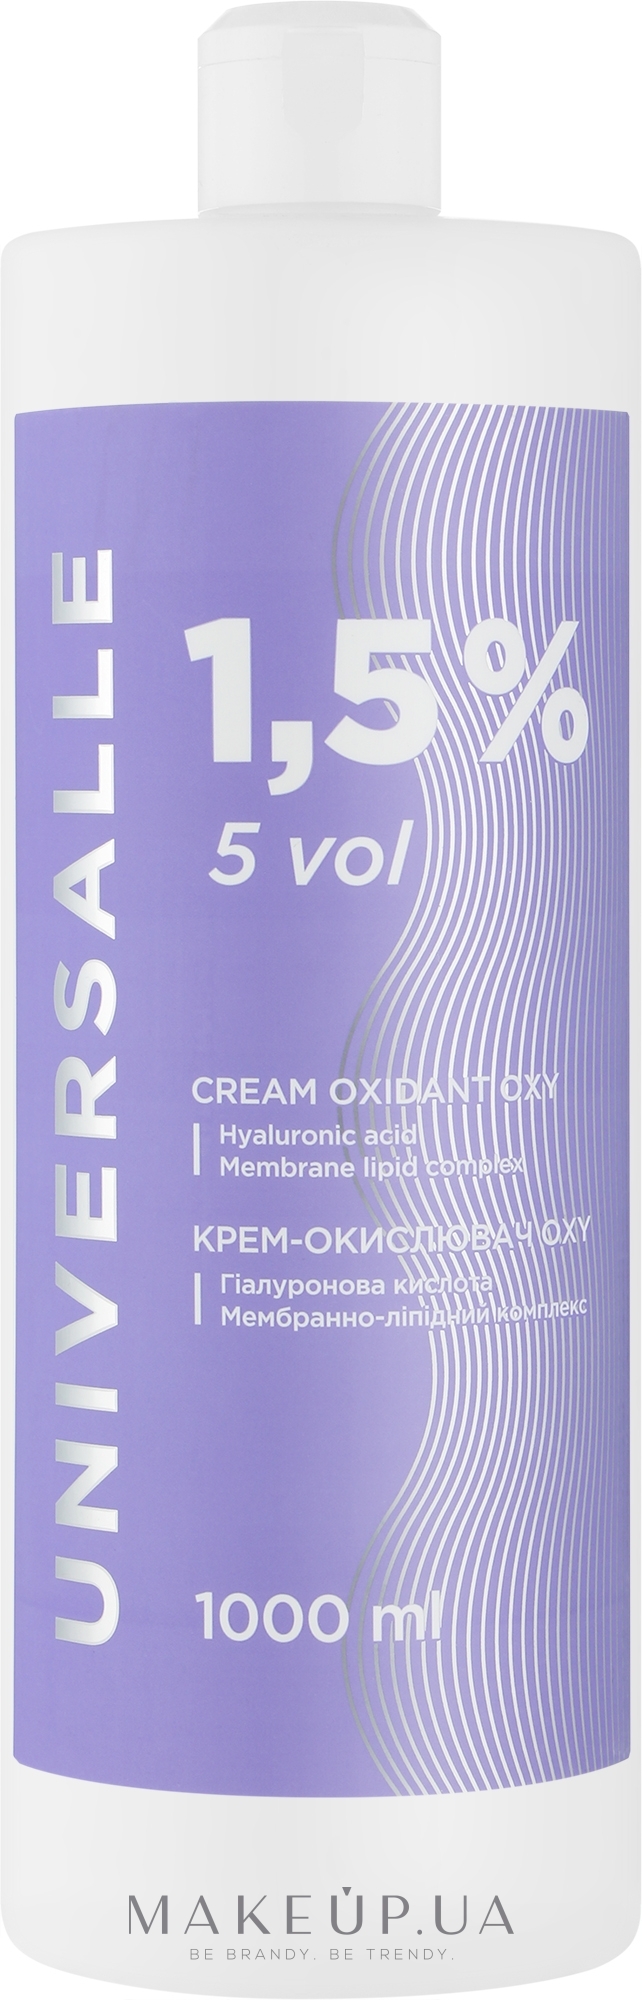 Крем-окислитель 1,5% - Universalle Cream Oxidant Oxy — фото 1000ml